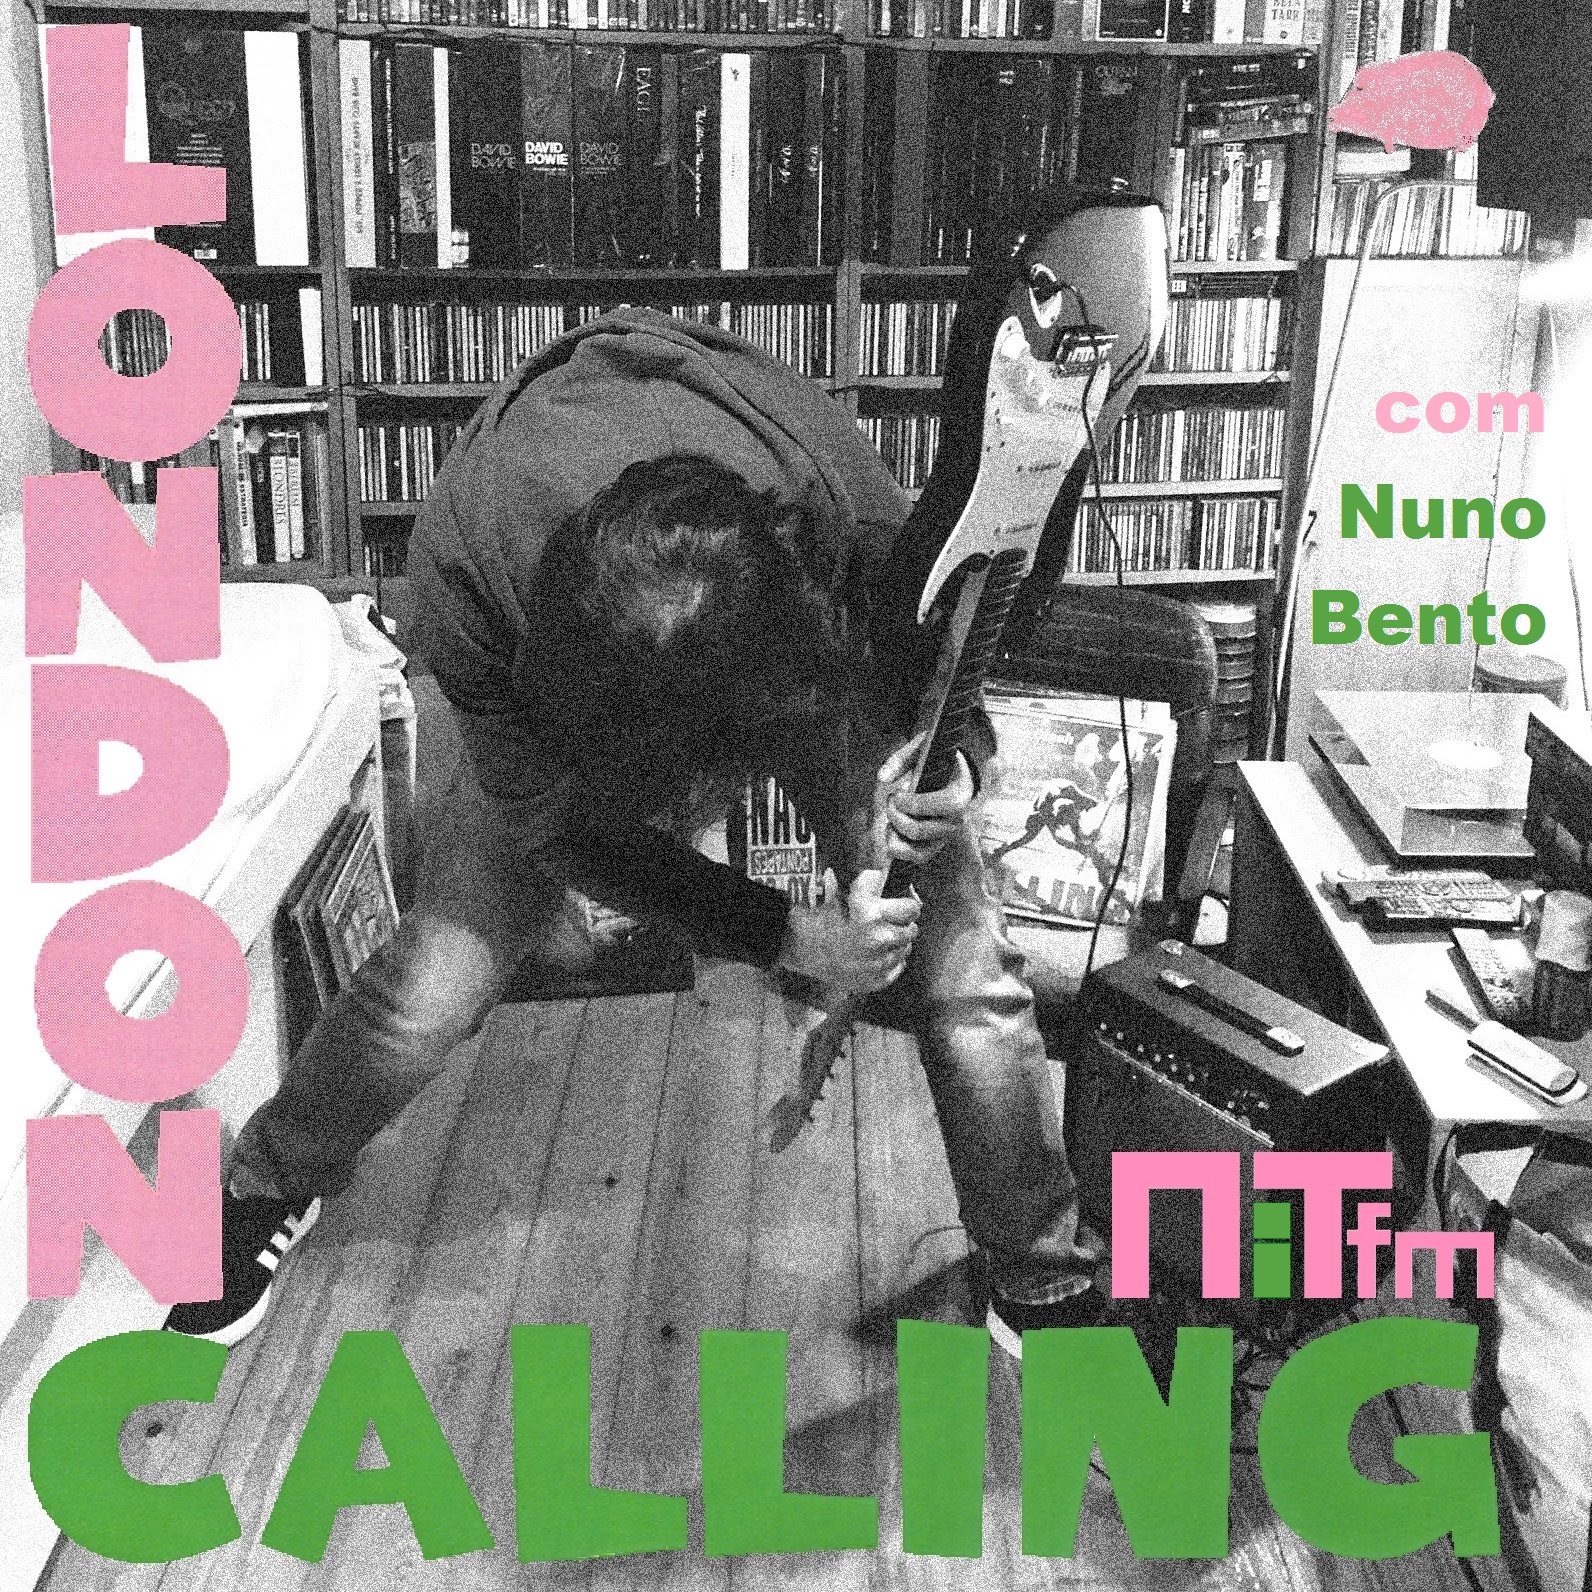 London Calling :  A Deal With God – As melhores colaborações de David Gilmour